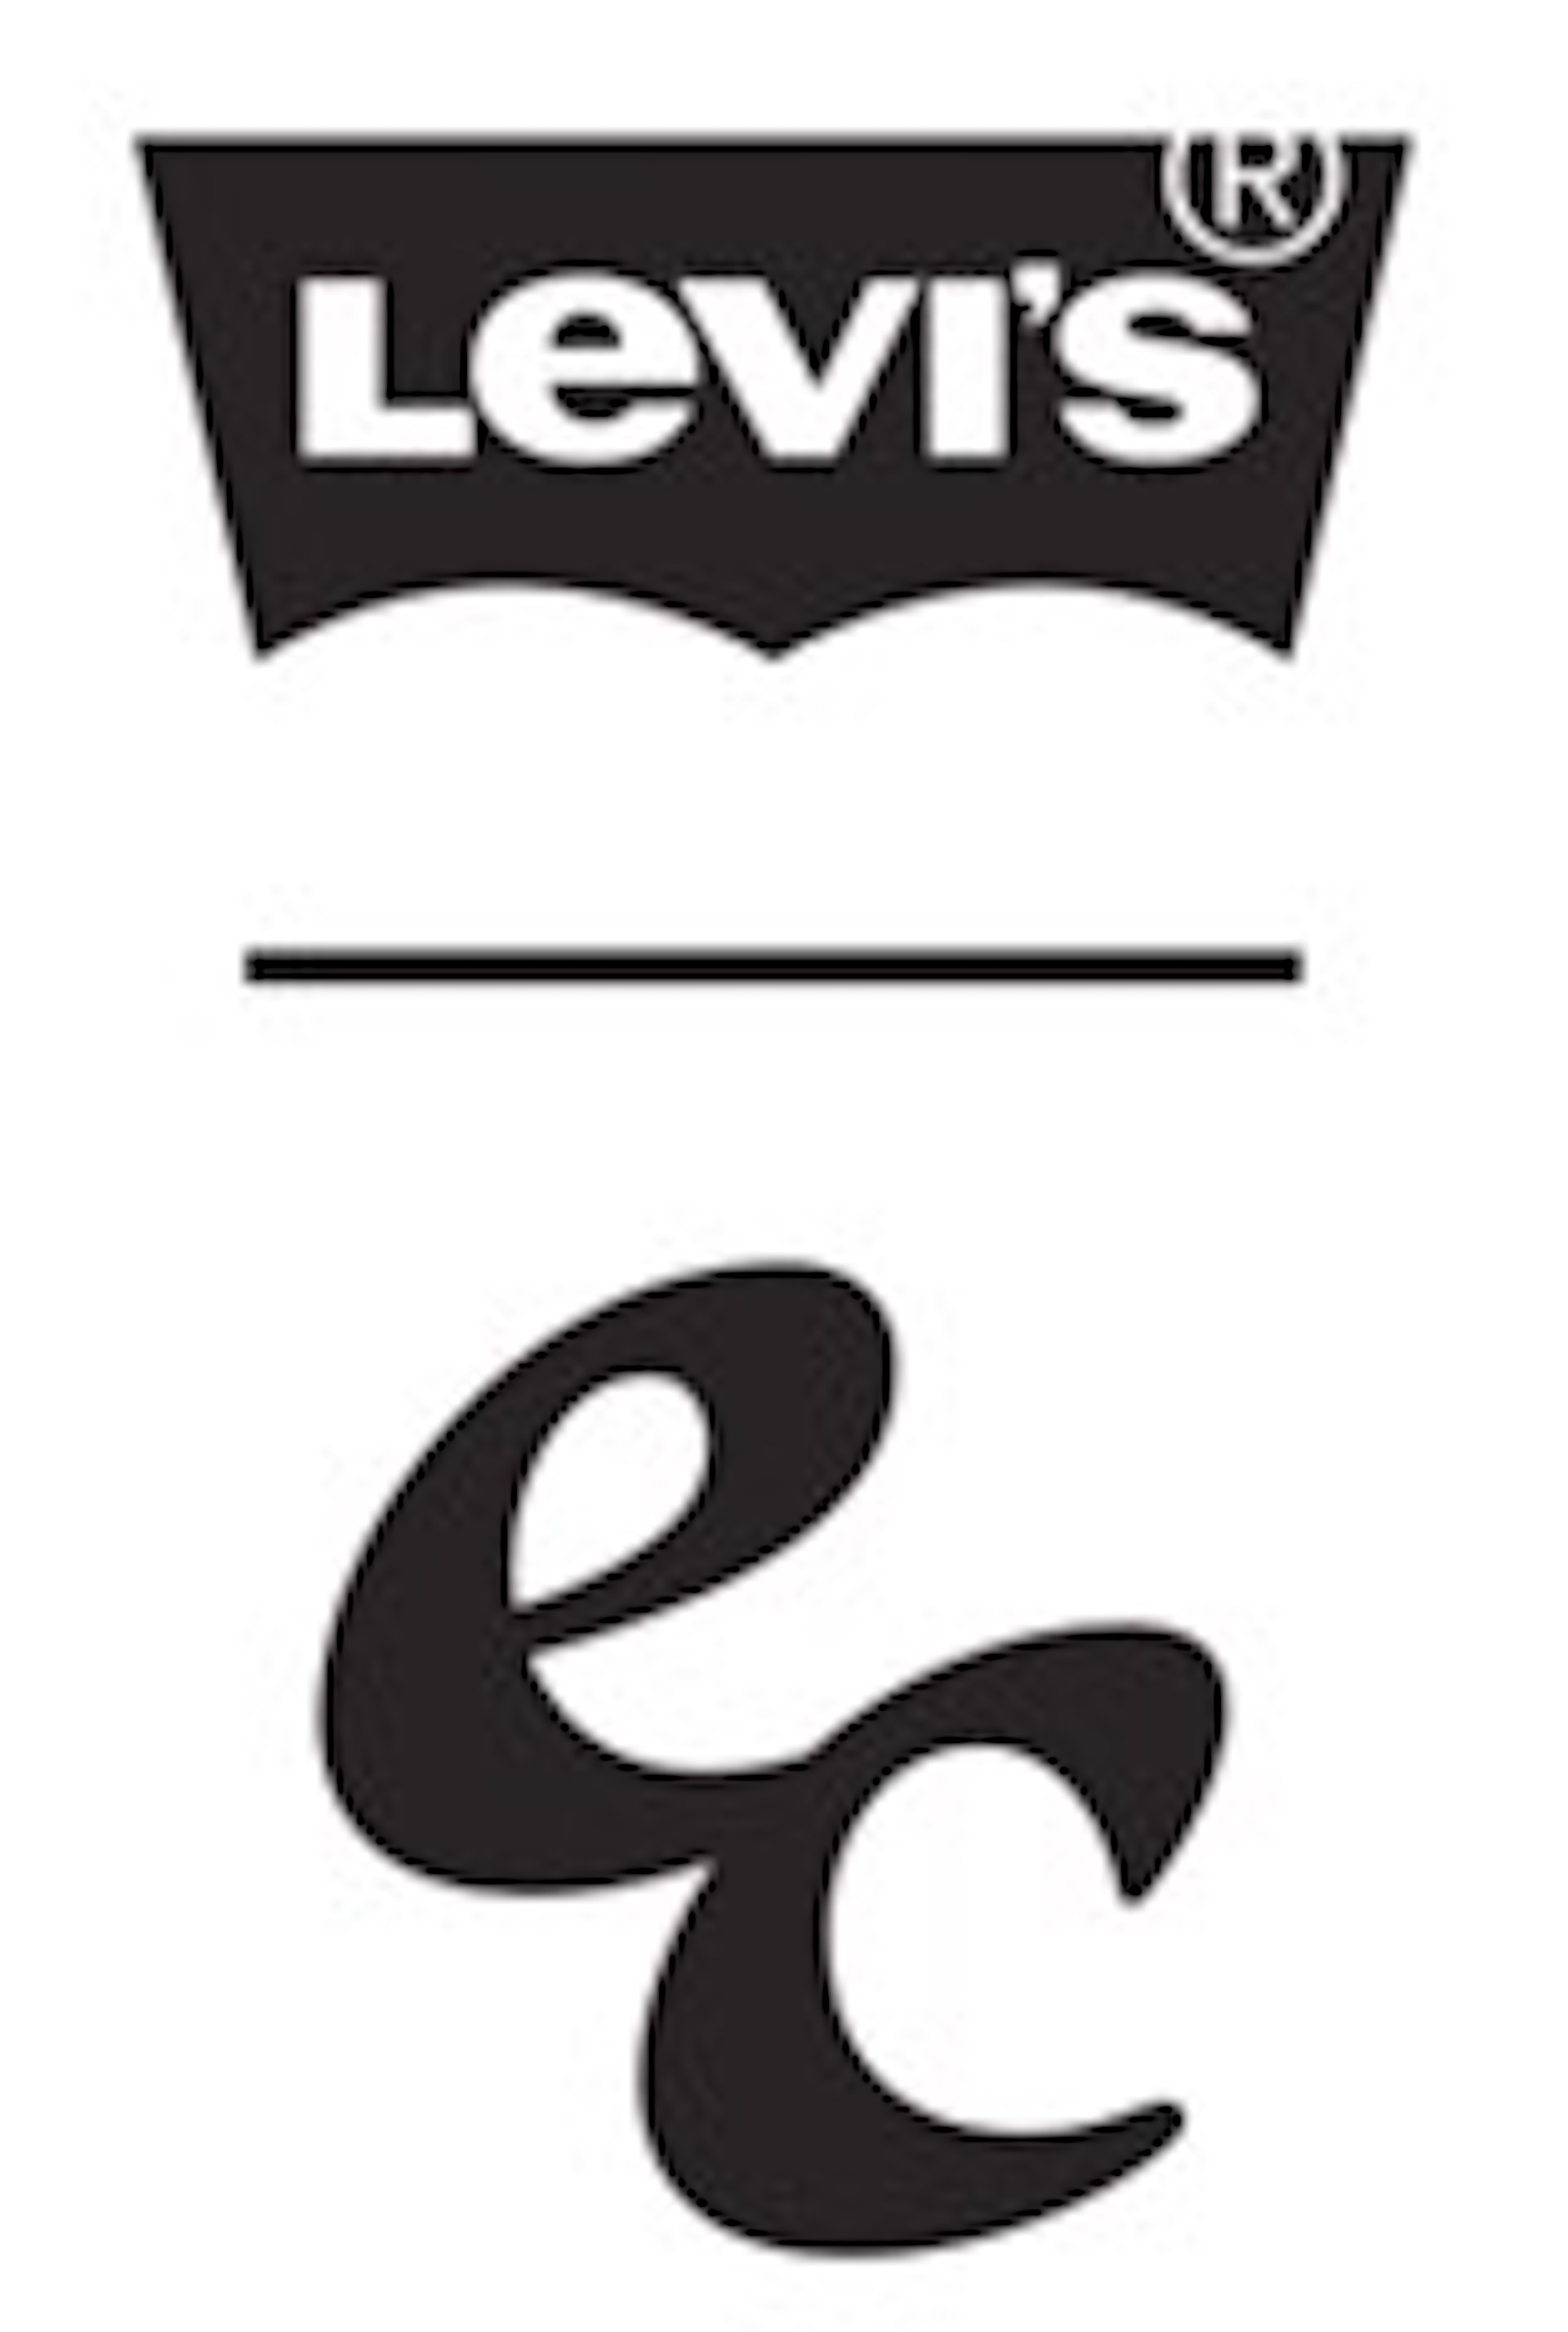 Levi's(R)、エマ・チェンバレンが織りなす“北カリフォルニアの自然と古着屋で見つけたお気に入り”へのオマージュ fashion230926_levi-02